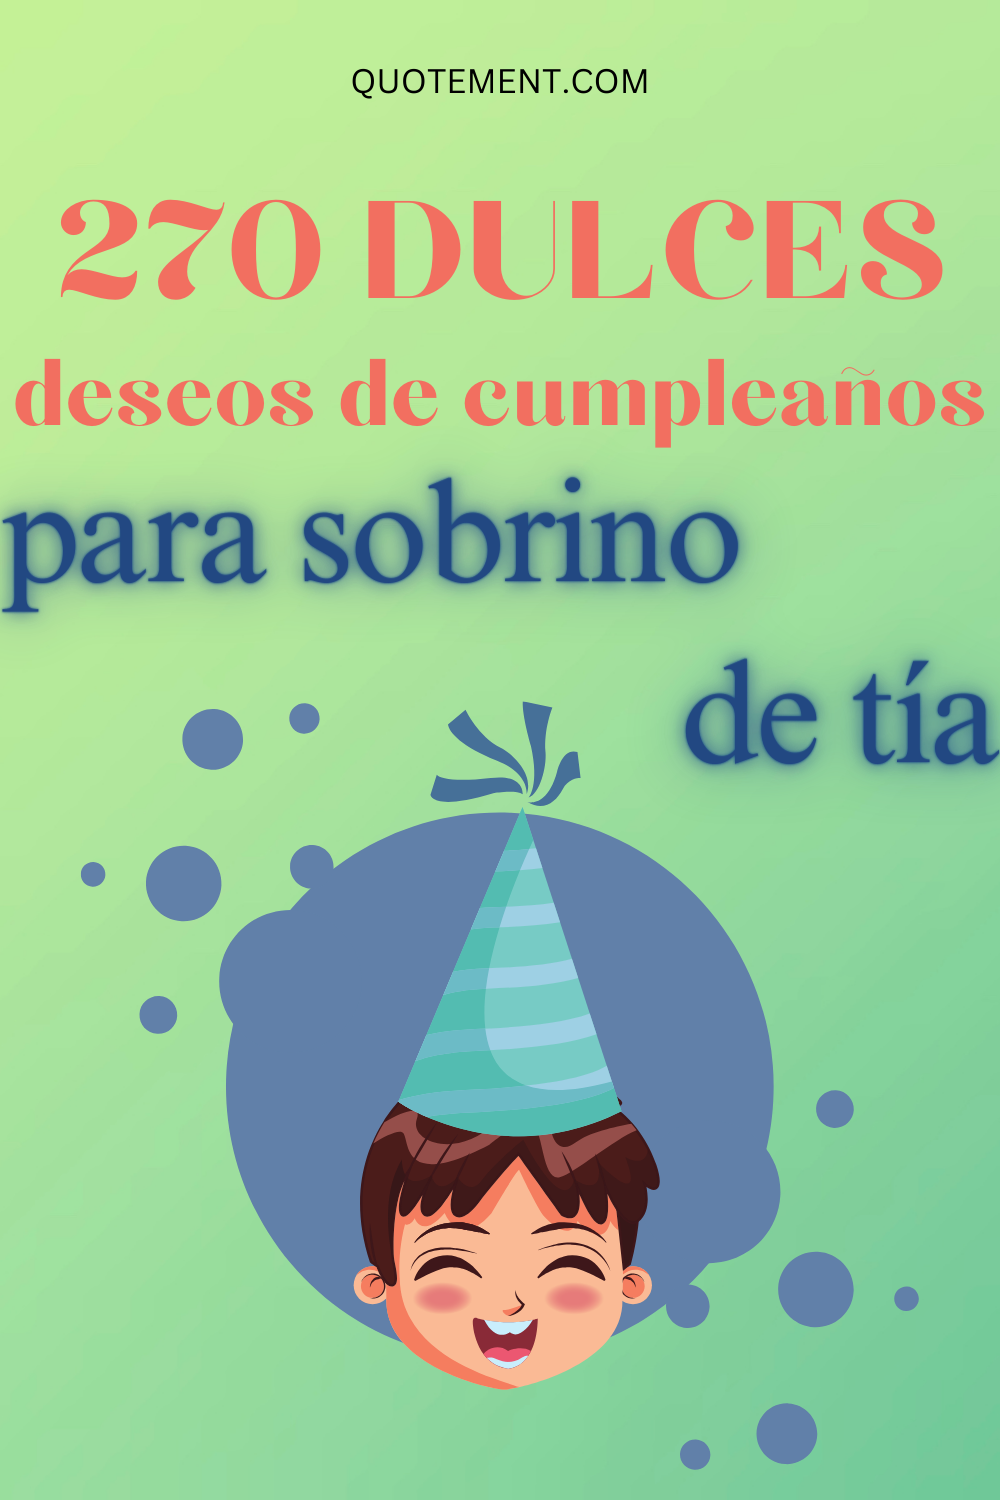 270 Mejores Deseos de Cumpleaños para Sobrino de Tía